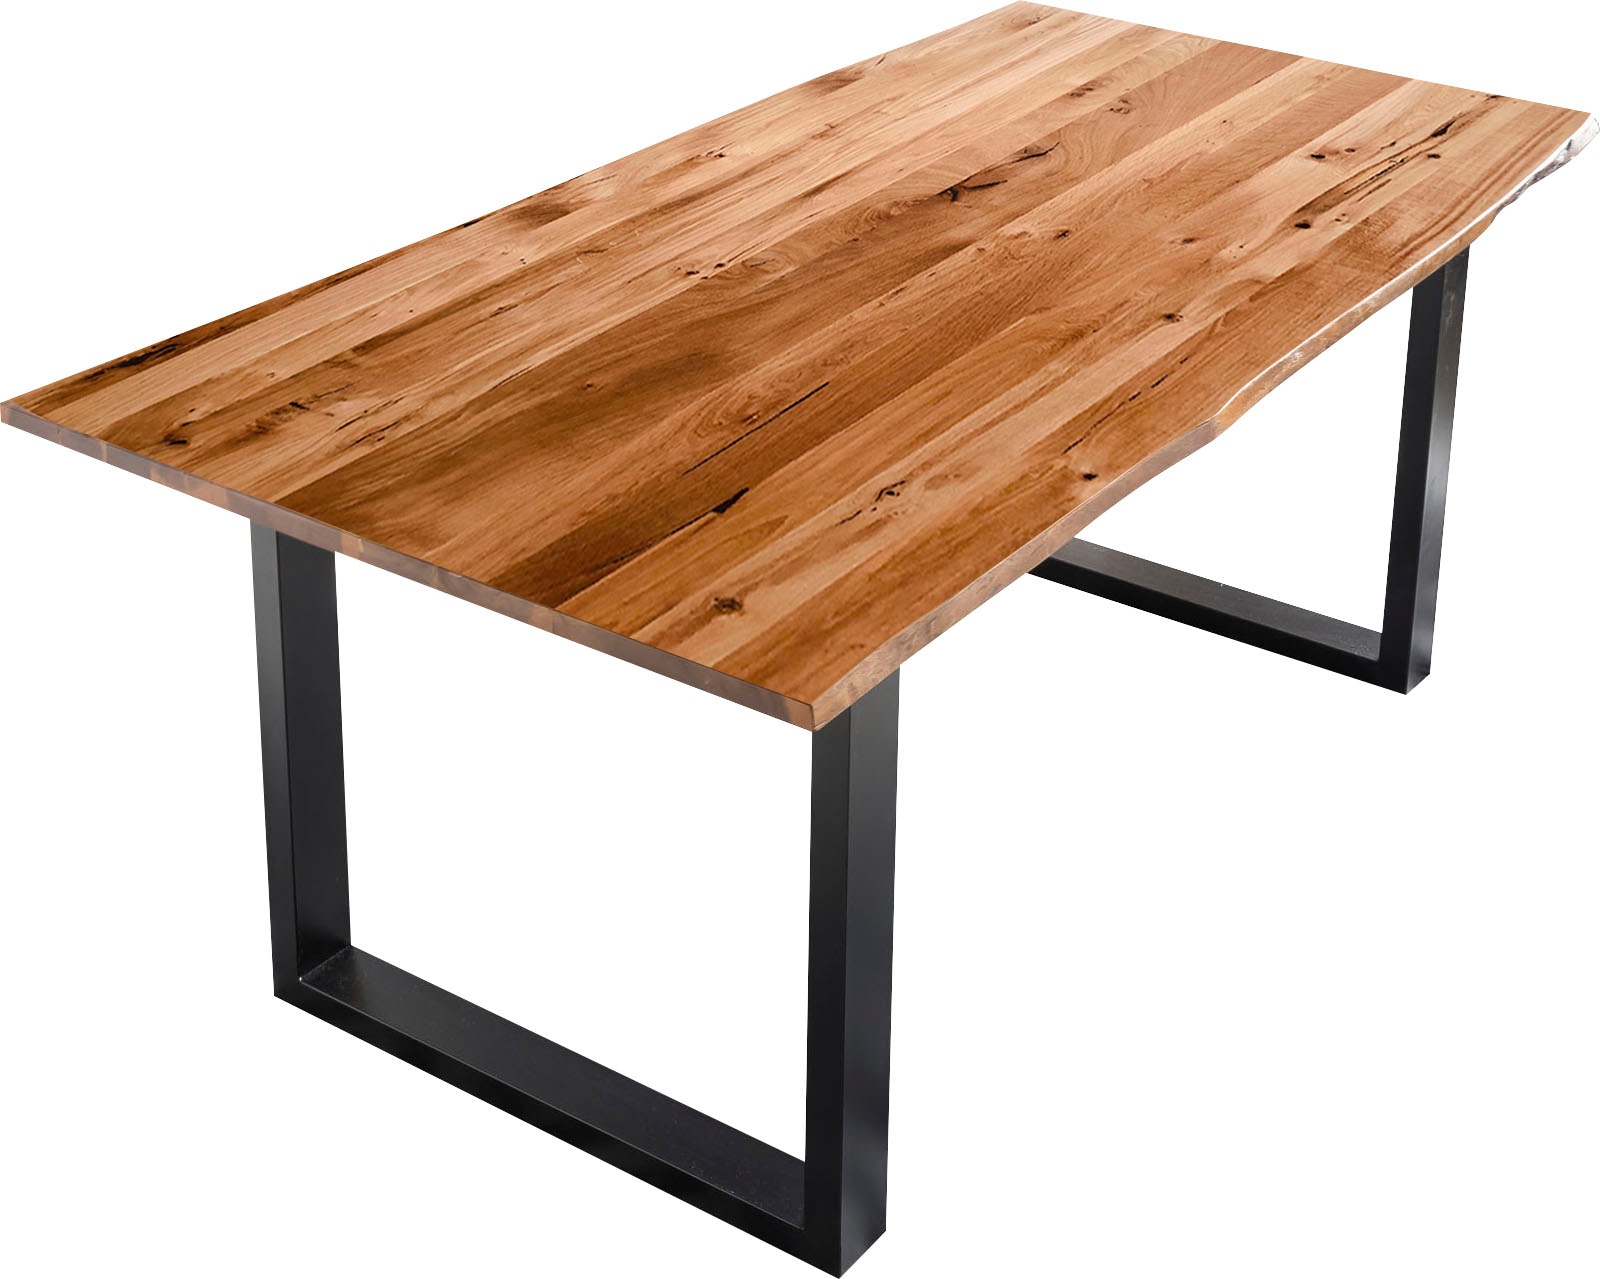 Baumkantentisch, Sichtbare Maserung und Astlöcher, Esstisch aus Massivholz